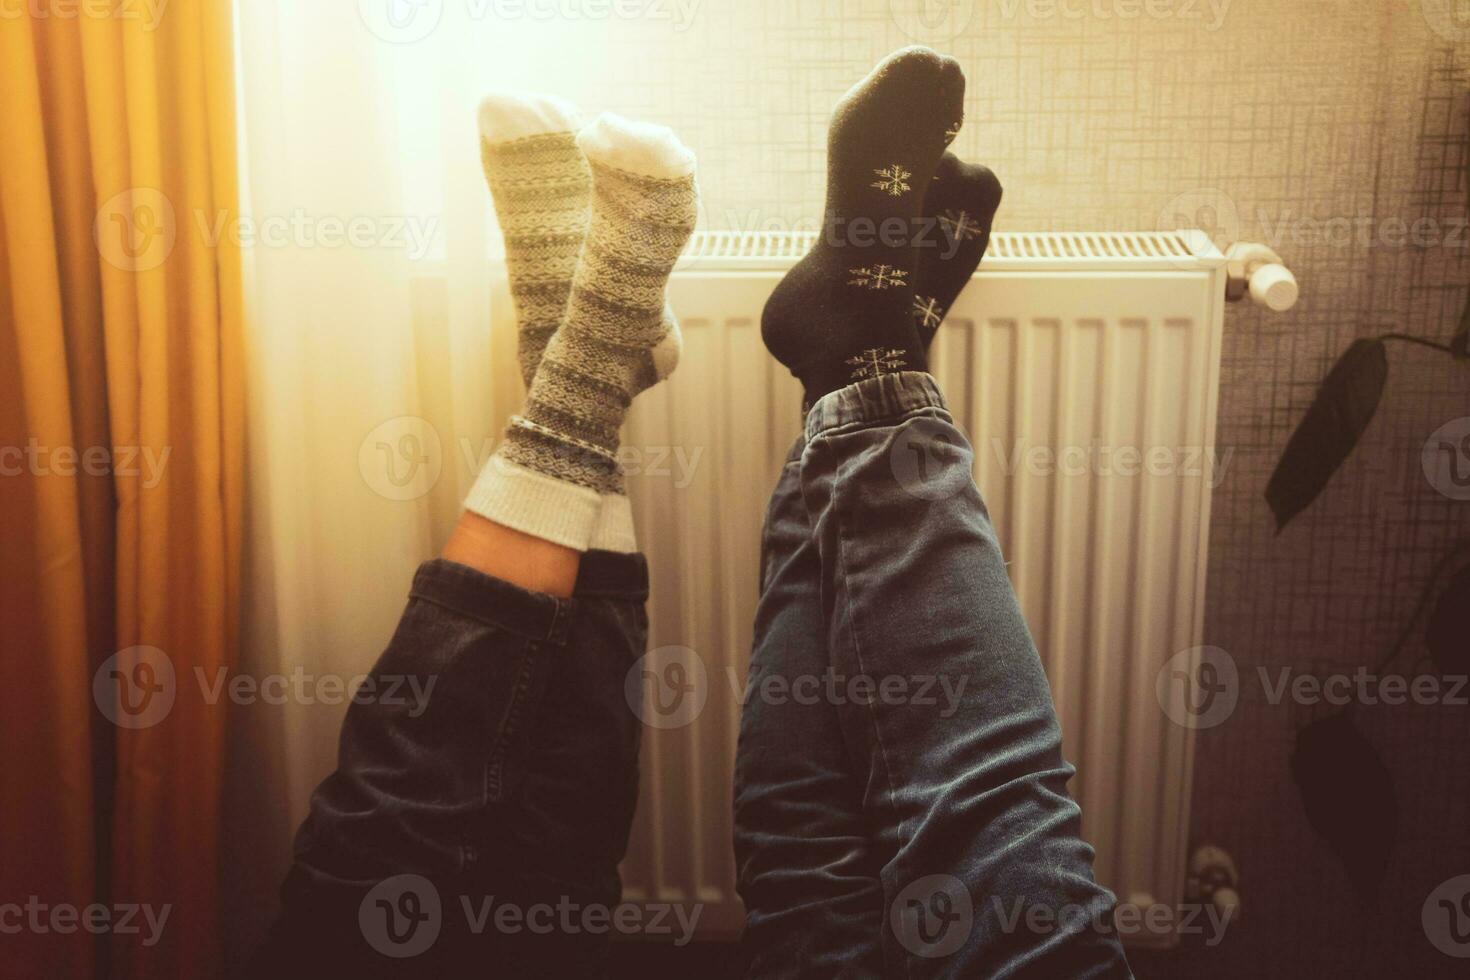 couple tenir jambes en haut chauffage pieds dans du froid Accueil à l'intérieur sur radiateur dans hiver avec confortable hiver chaussettes sur. valentines marrant ensemble chaud pieds par radiateur par fenêtre photo